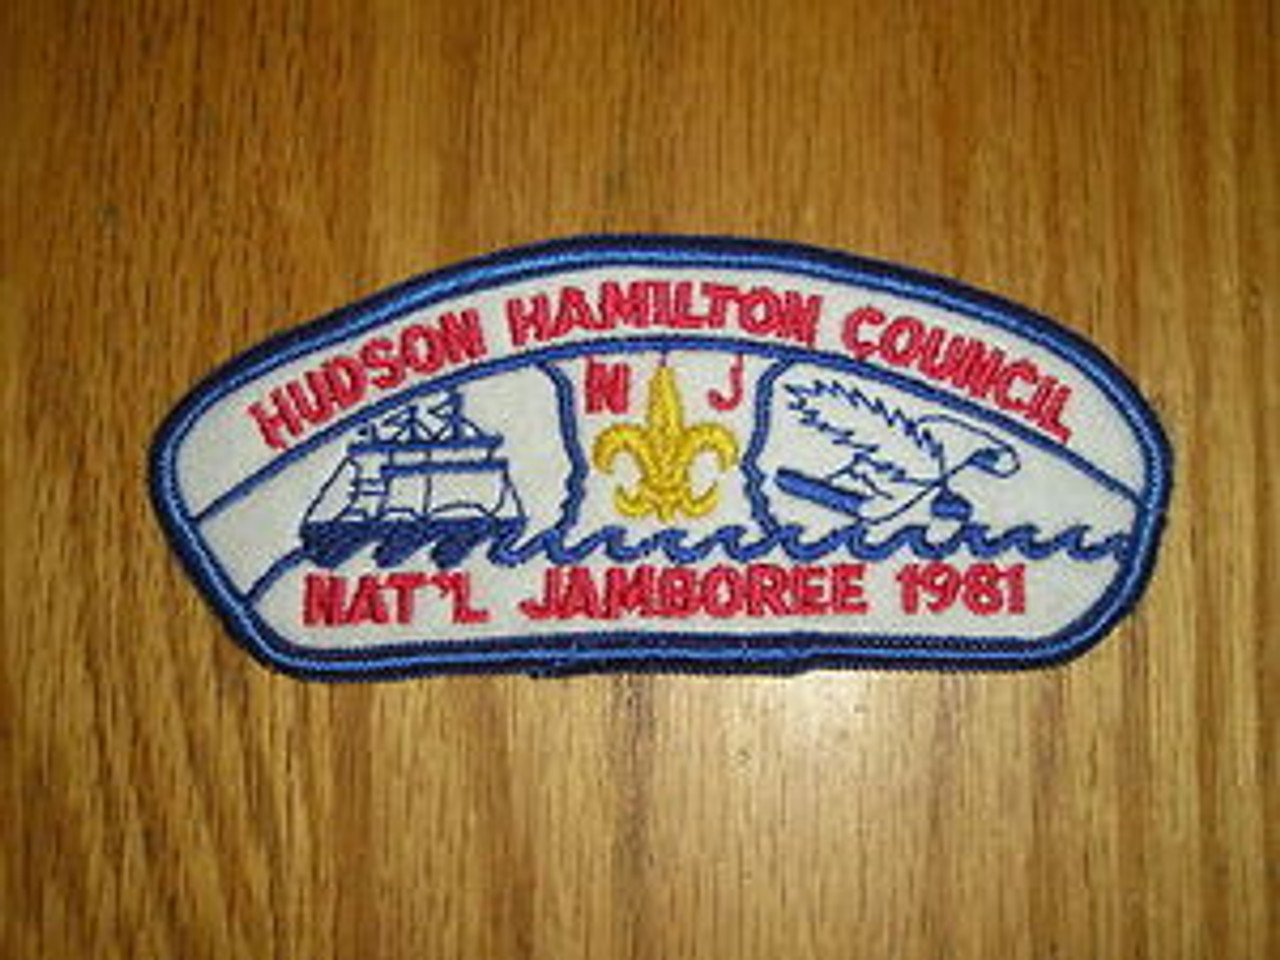 1981 National Jamboree JSP - Hudson Hamilton Council